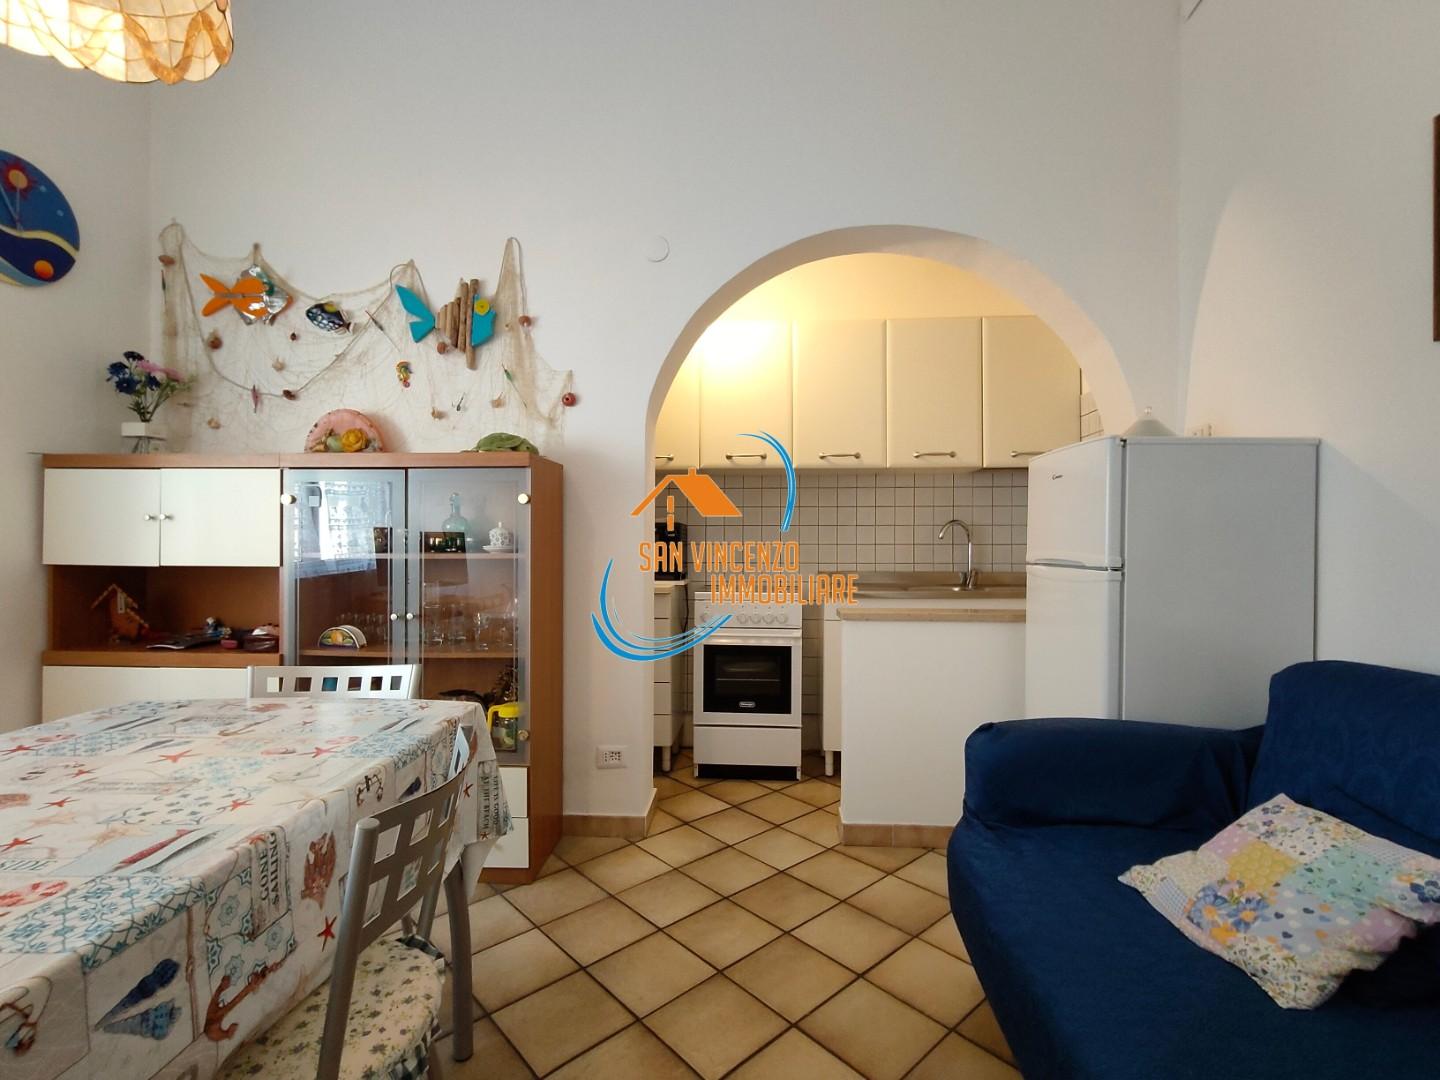 Appartamento in vendita a San Vincenzo, 3 locali, prezzo € 150.000 | PortaleAgenzieImmobiliari.it